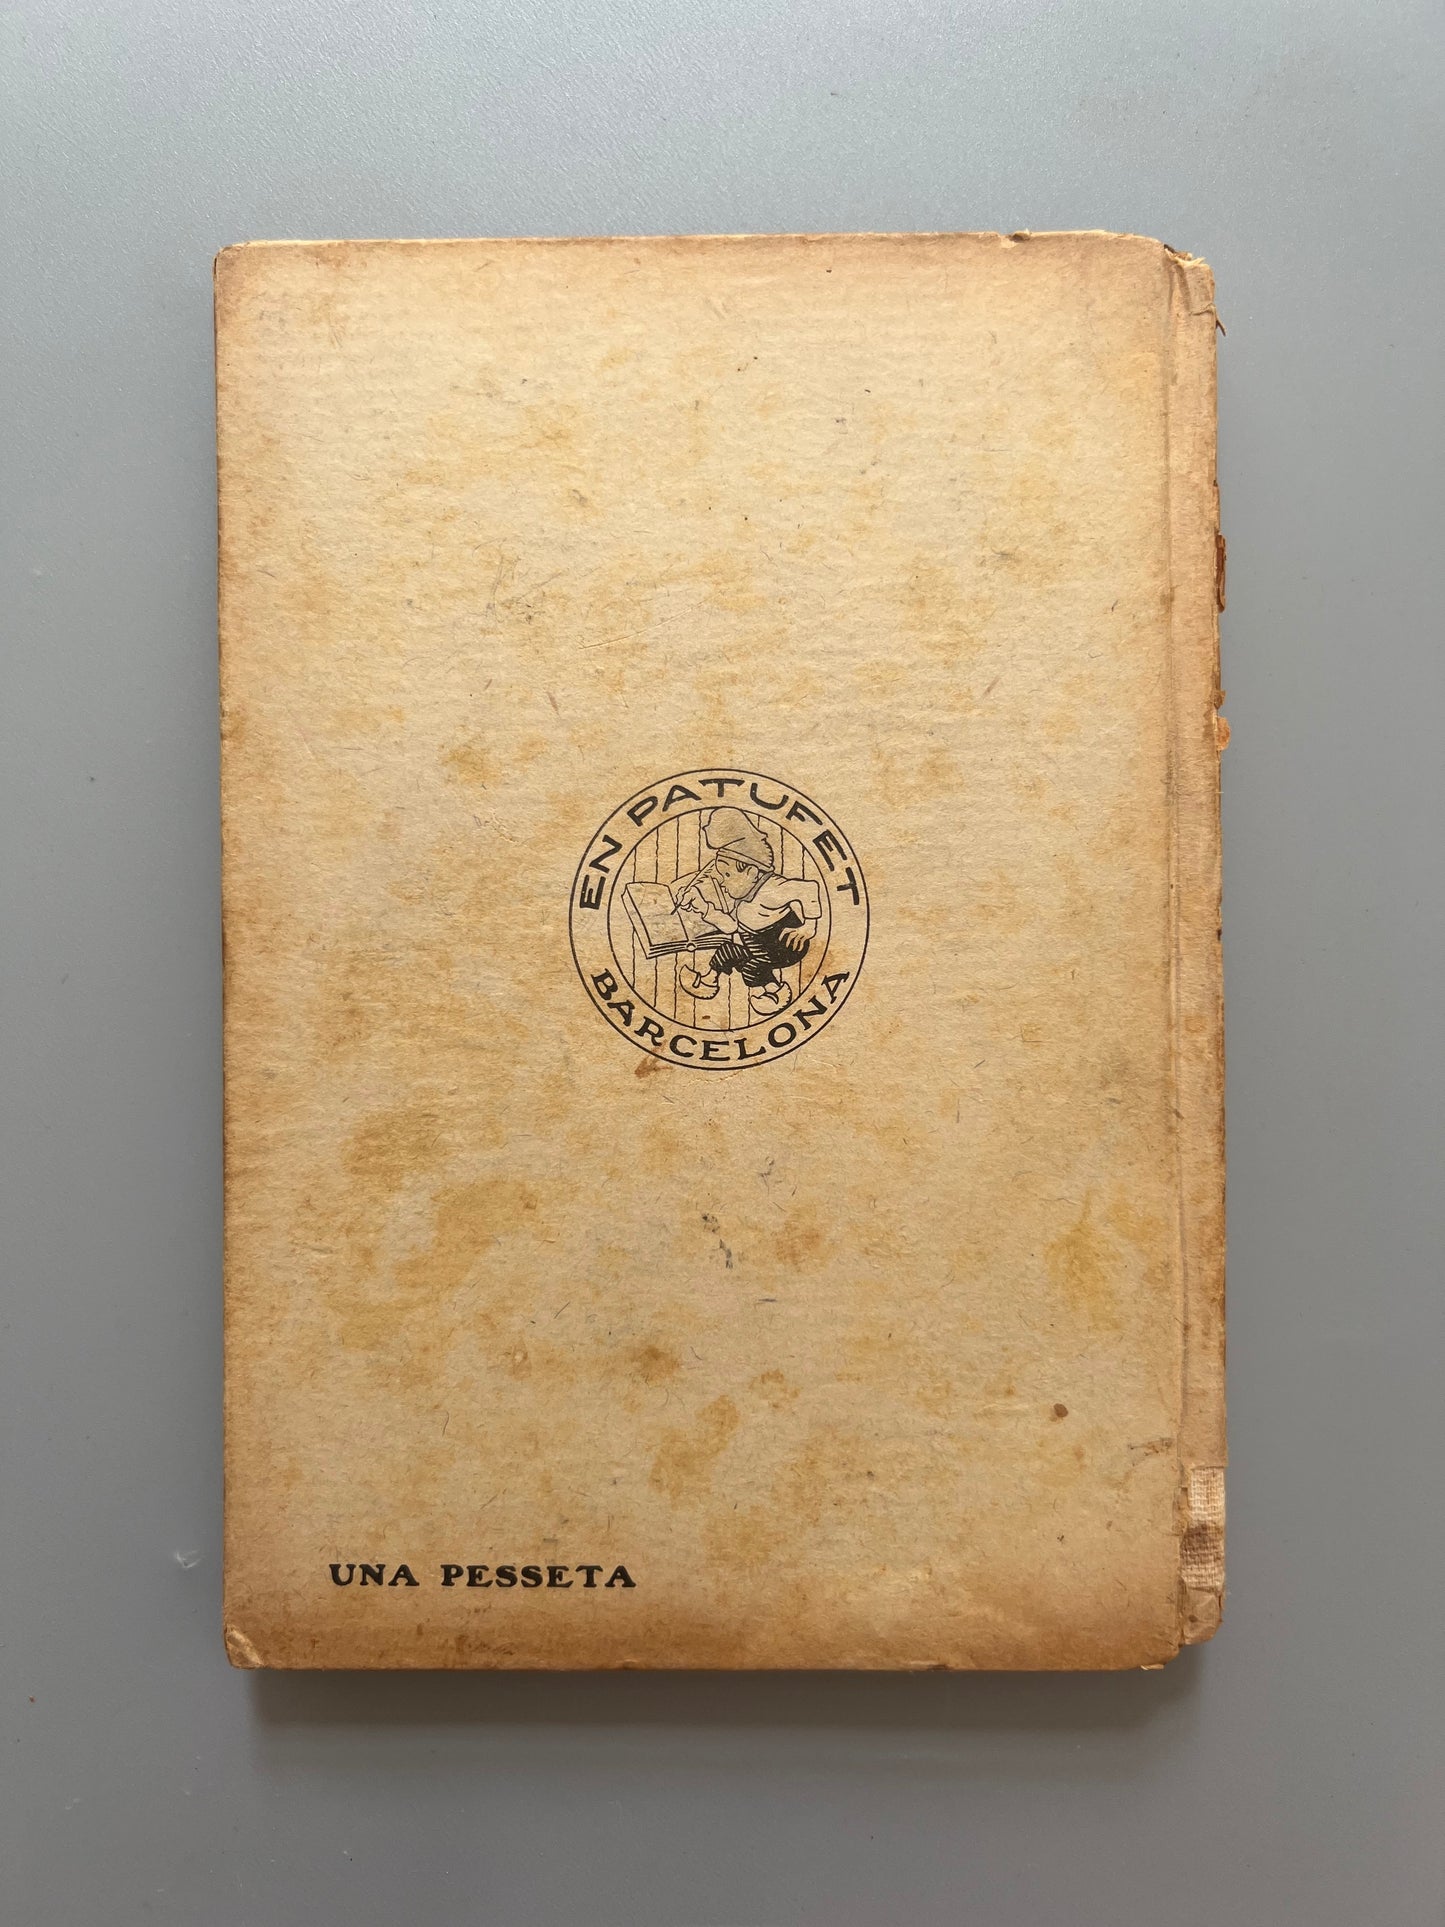 De sota terra a plena llum, J. Mª Folch i Torres - Biblioteca Patufet, 1917